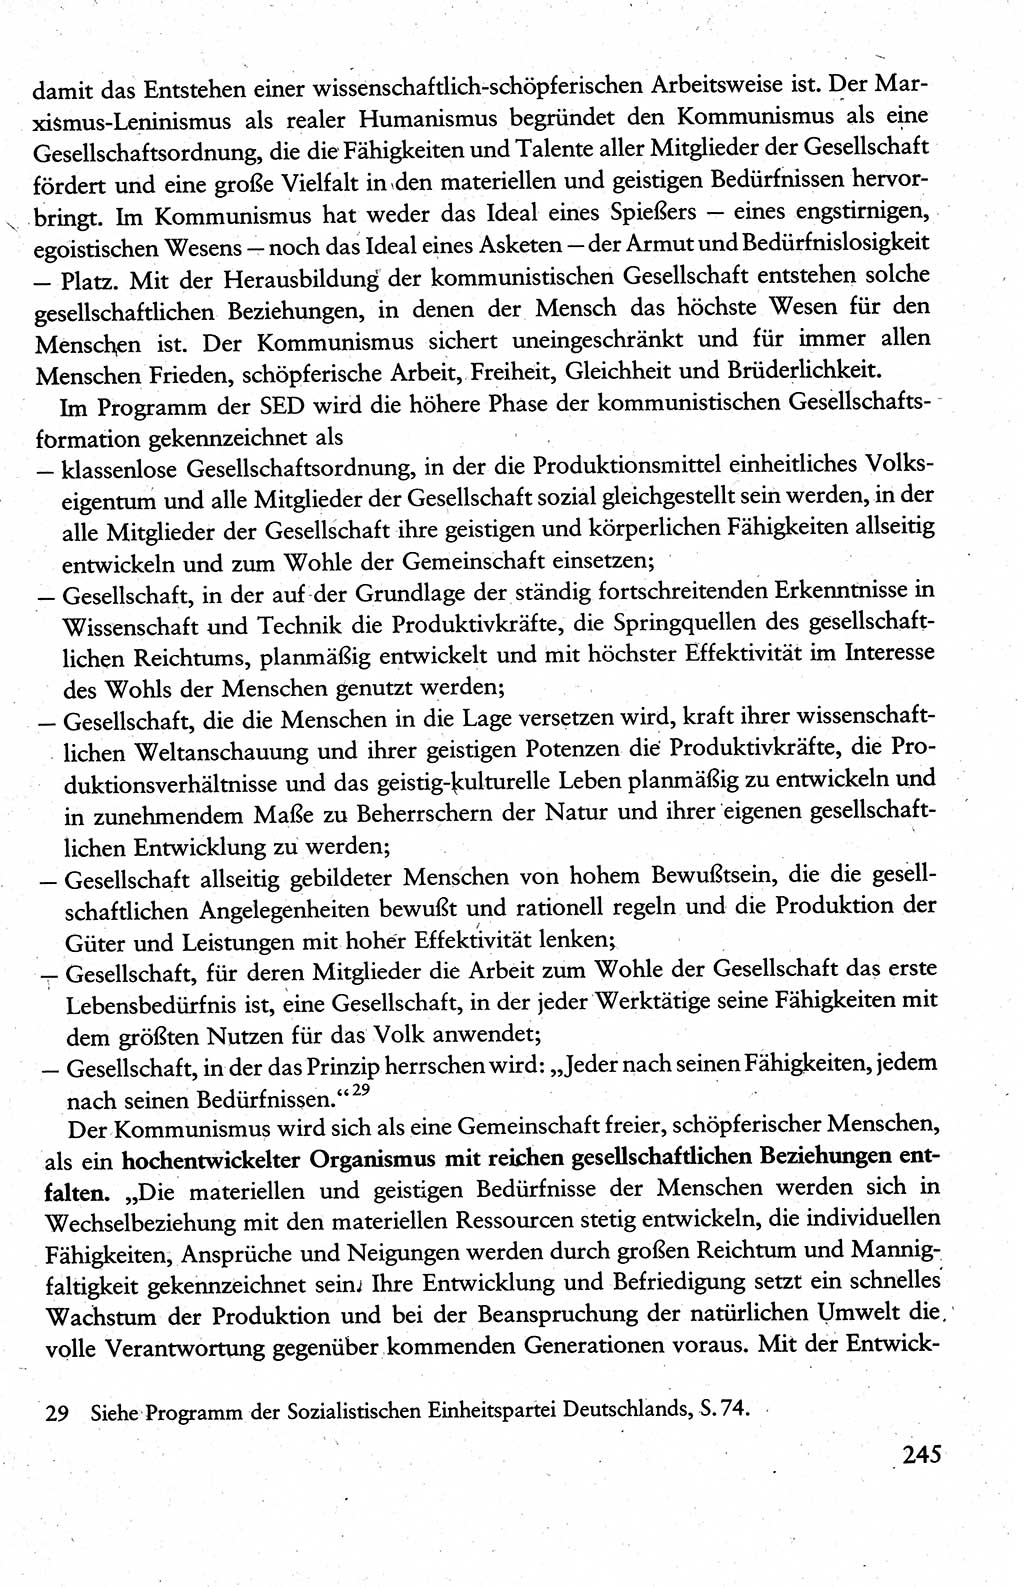 Wissenschaftlicher Kommunismus [Deutsche Demokratische Republik (DDR)], Lehrbuch für das marxistisch-leninistische Grundlagenstudium 1983, Seite 245 (Wiss. Komm. DDR Lb. 1983, S. 245)